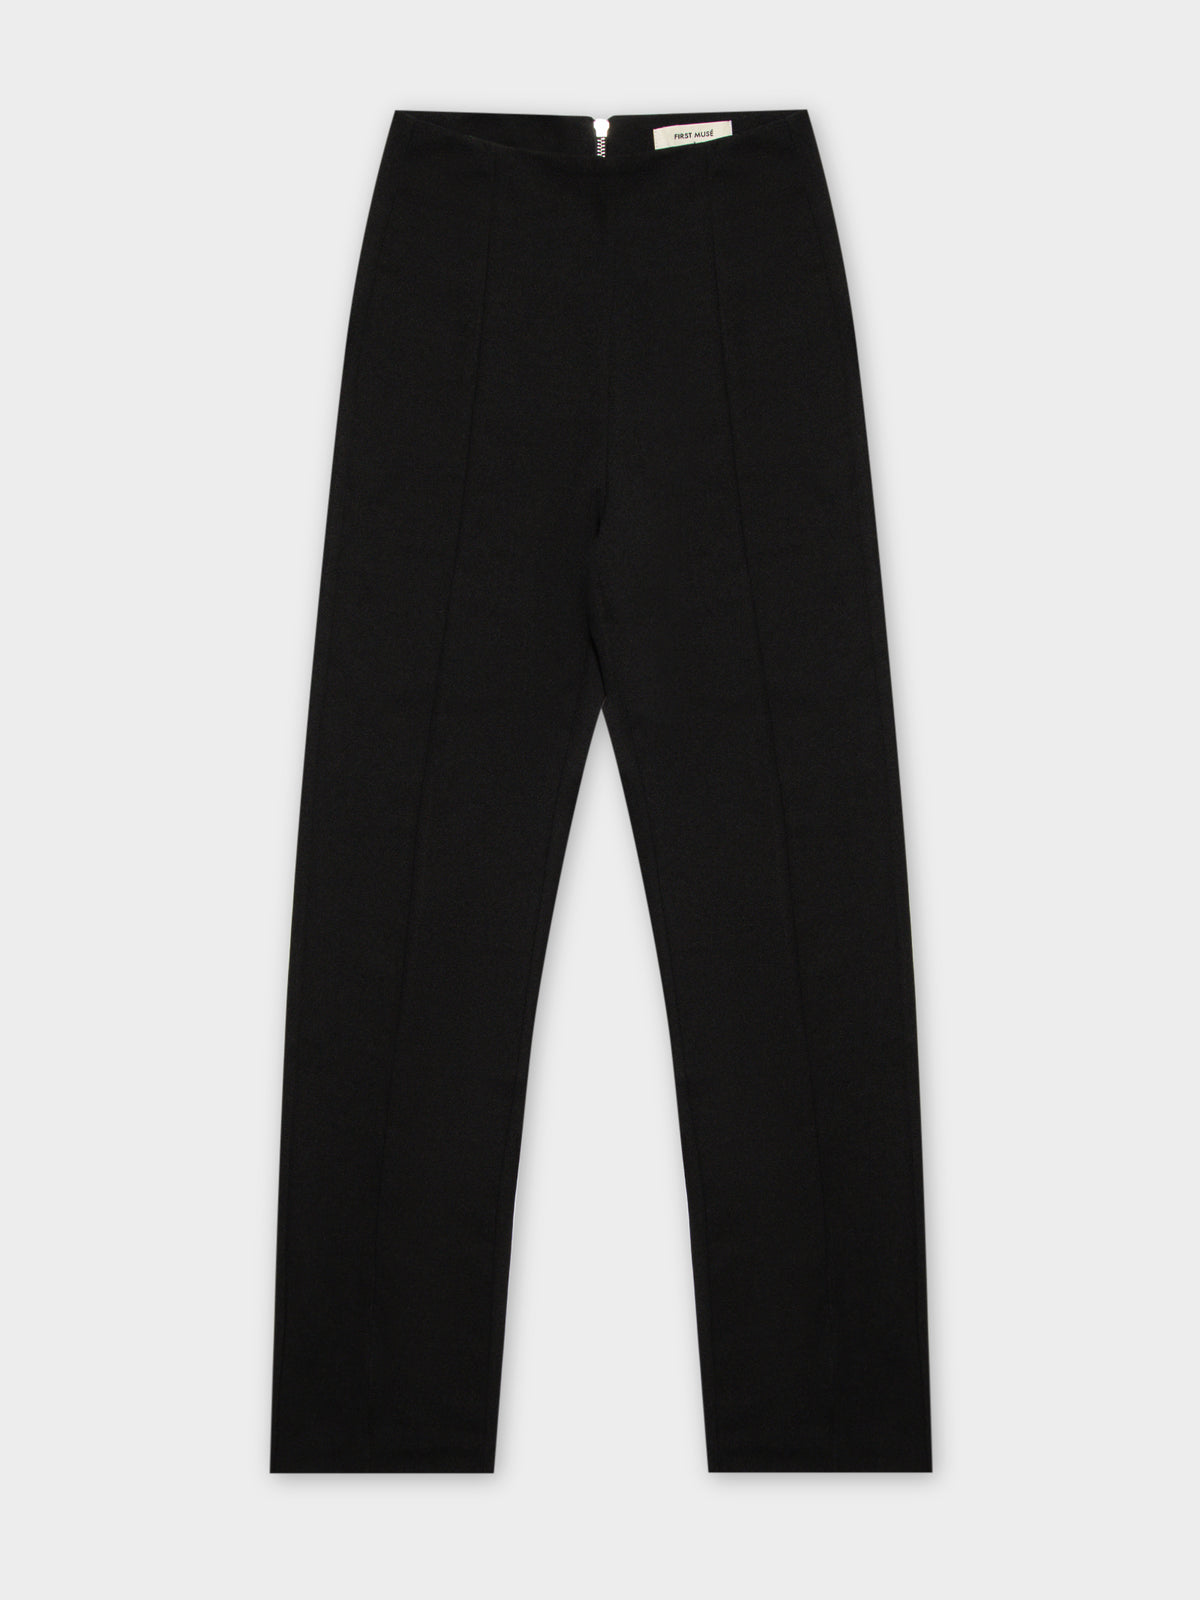 Niclette Pants in Black